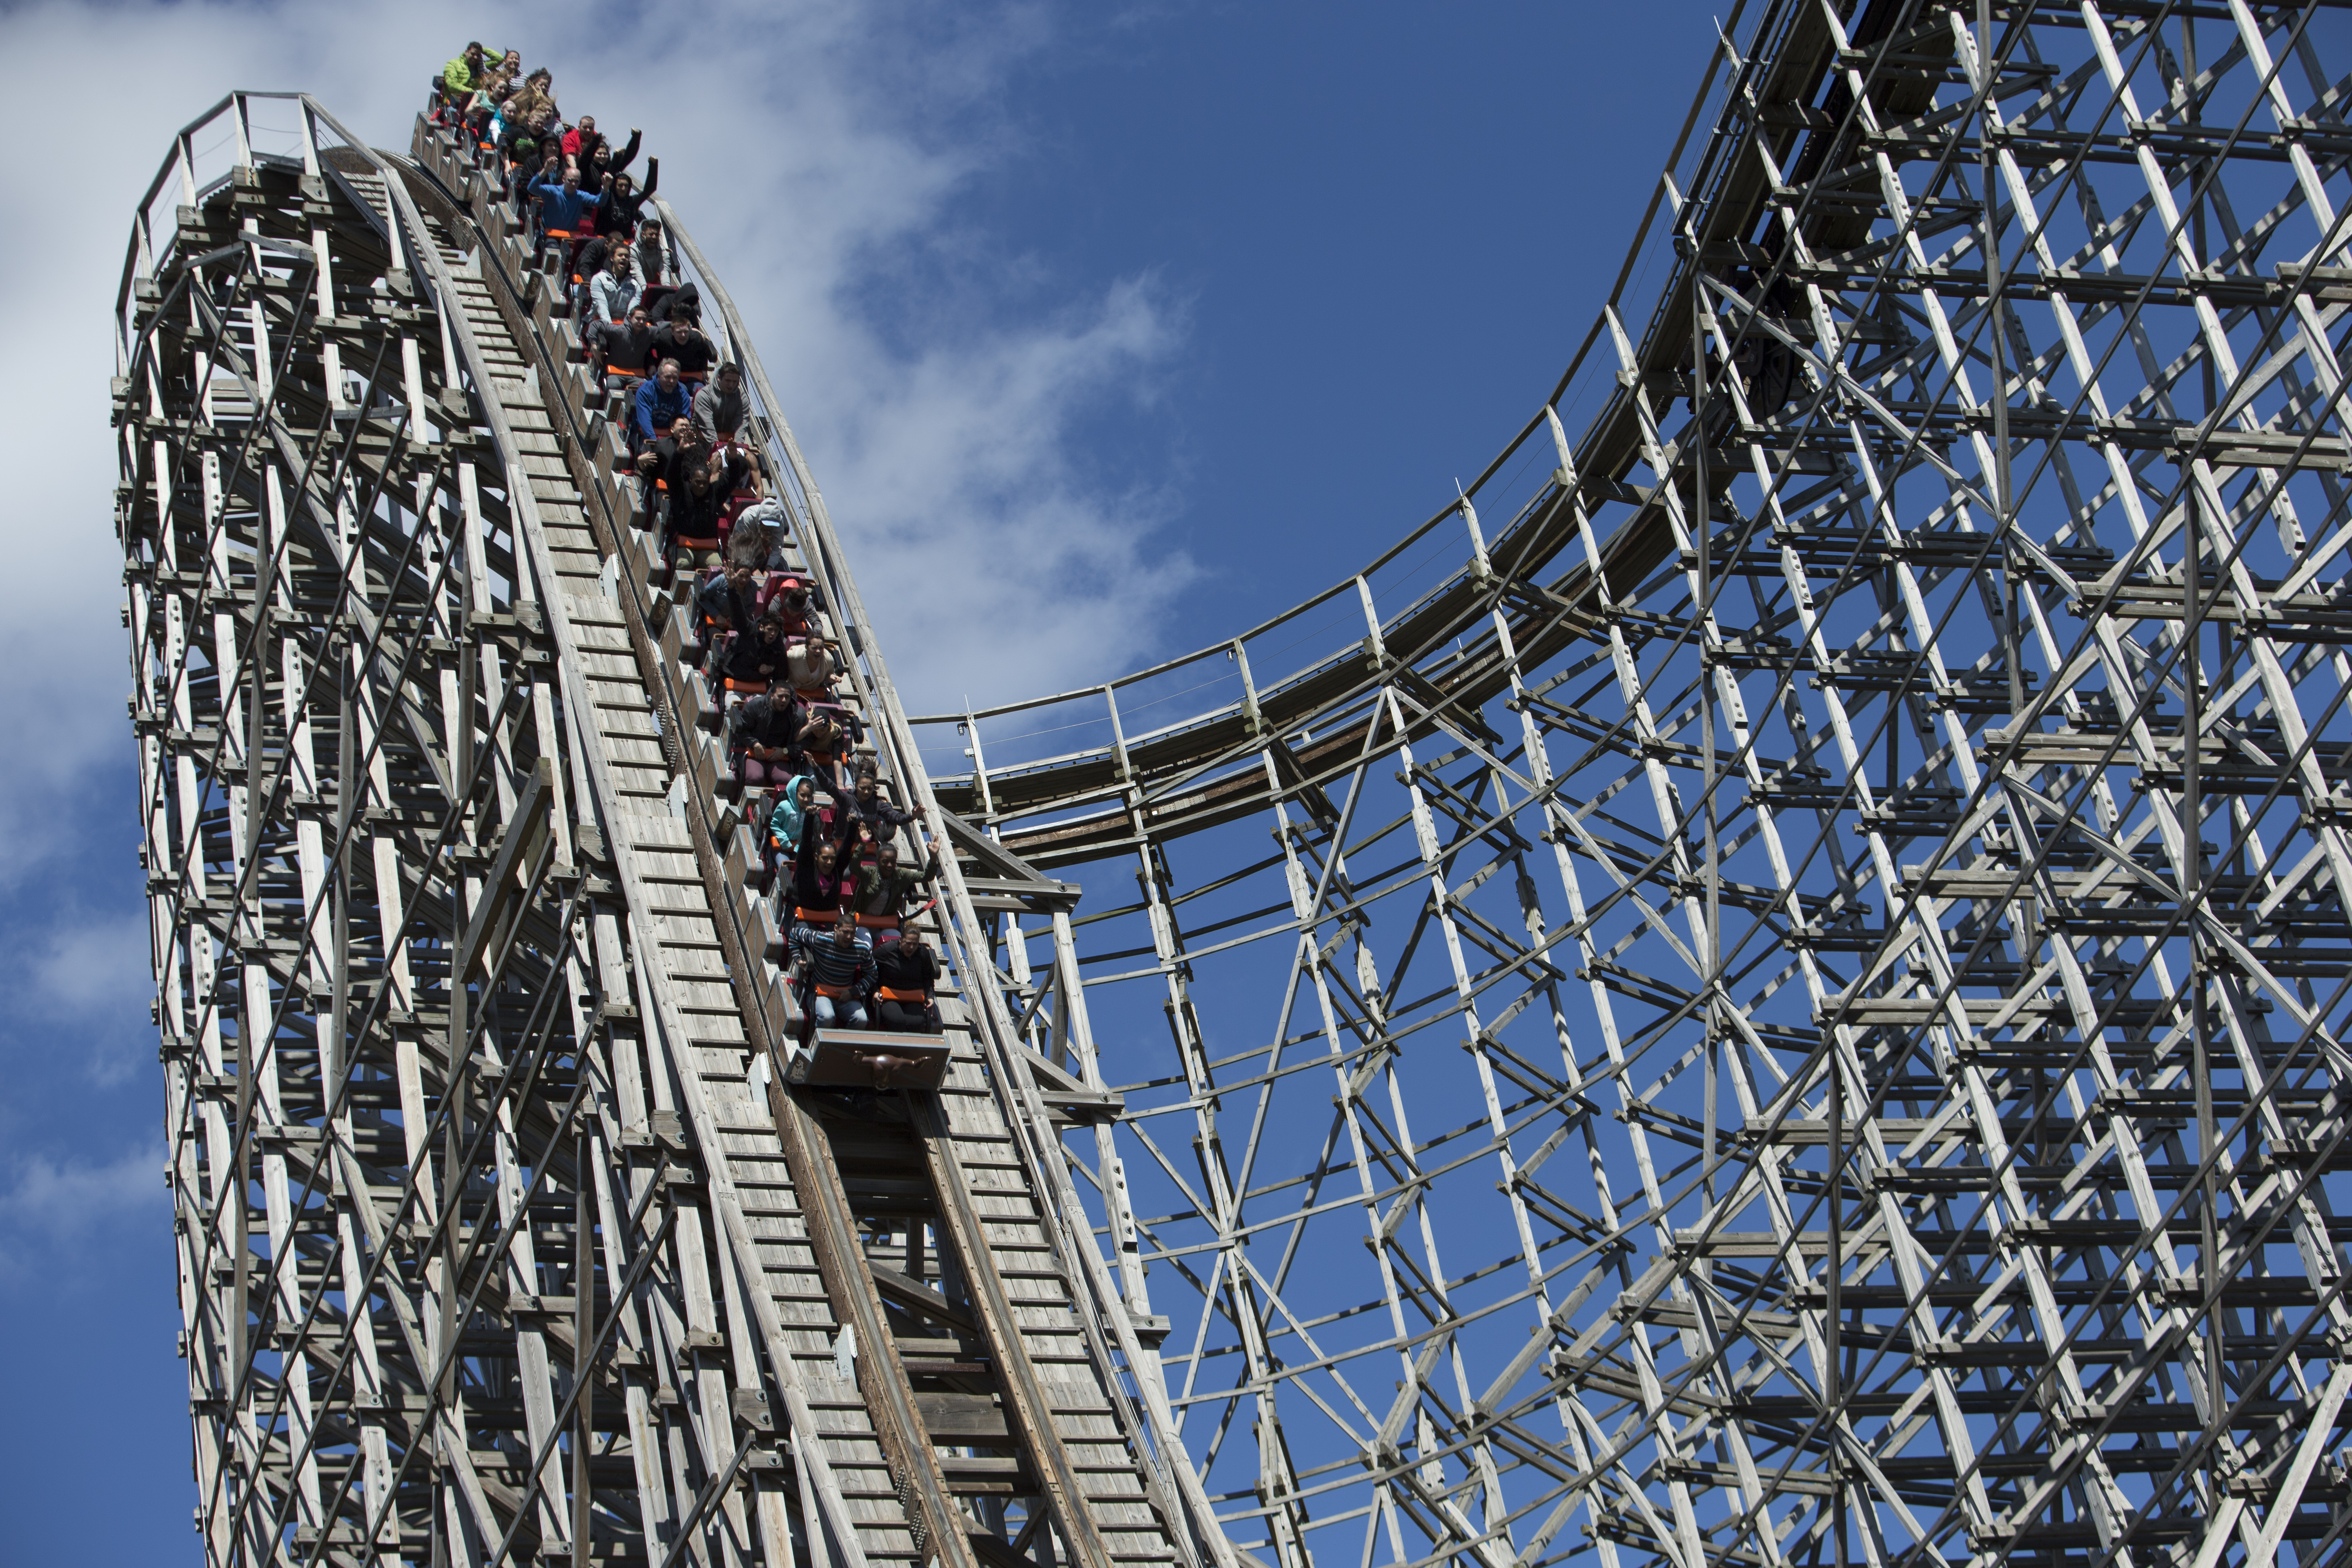 How roller coaster regulation works